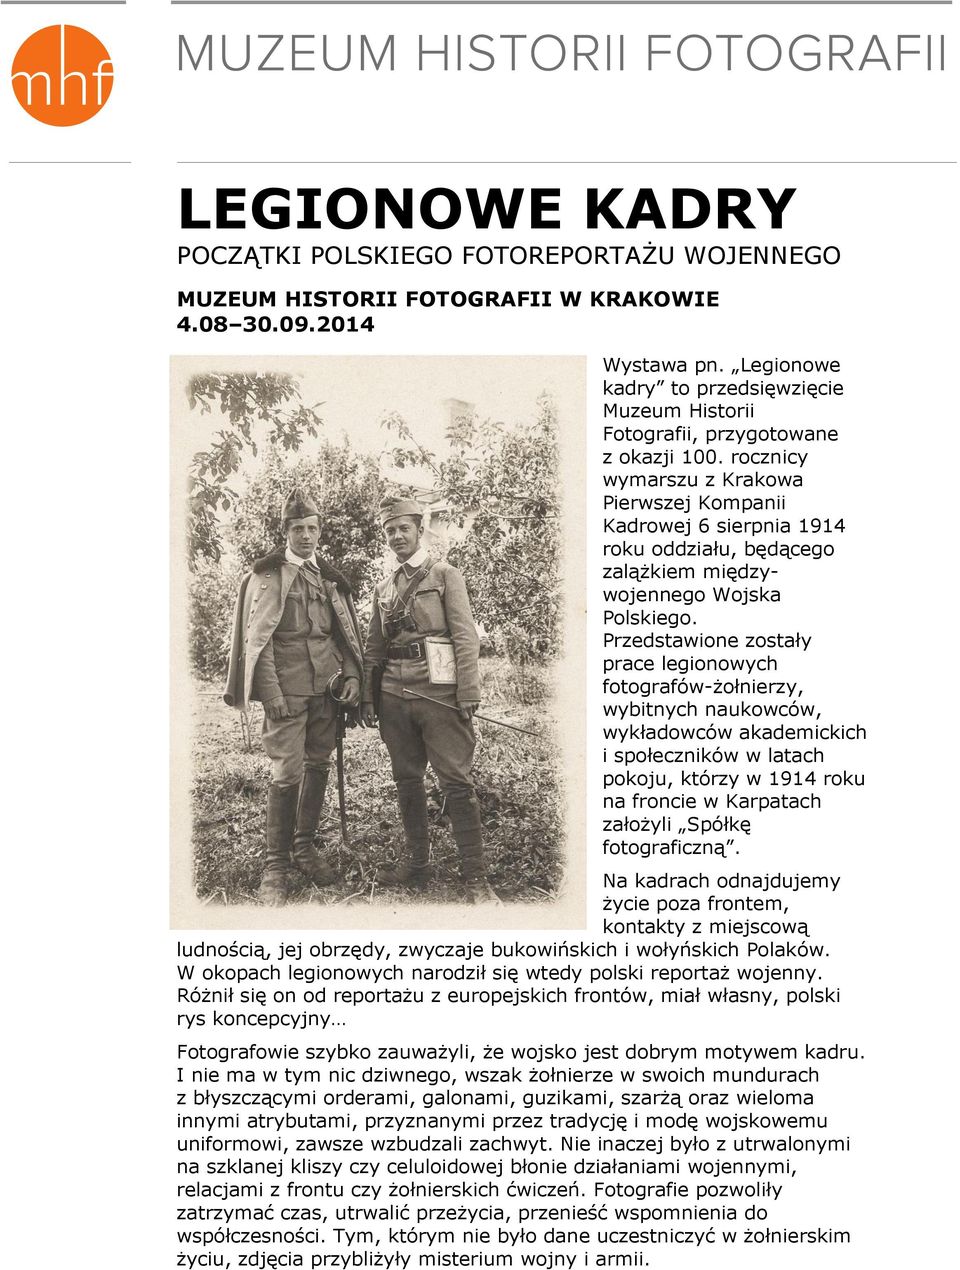 rocznicy wymarszu z Krakowa Pierwszej Kompanii Kadrowej 6 sierpnia 1914 roku oddziału, będącego zalążkiem międzywojennego Wojska Polskiego.